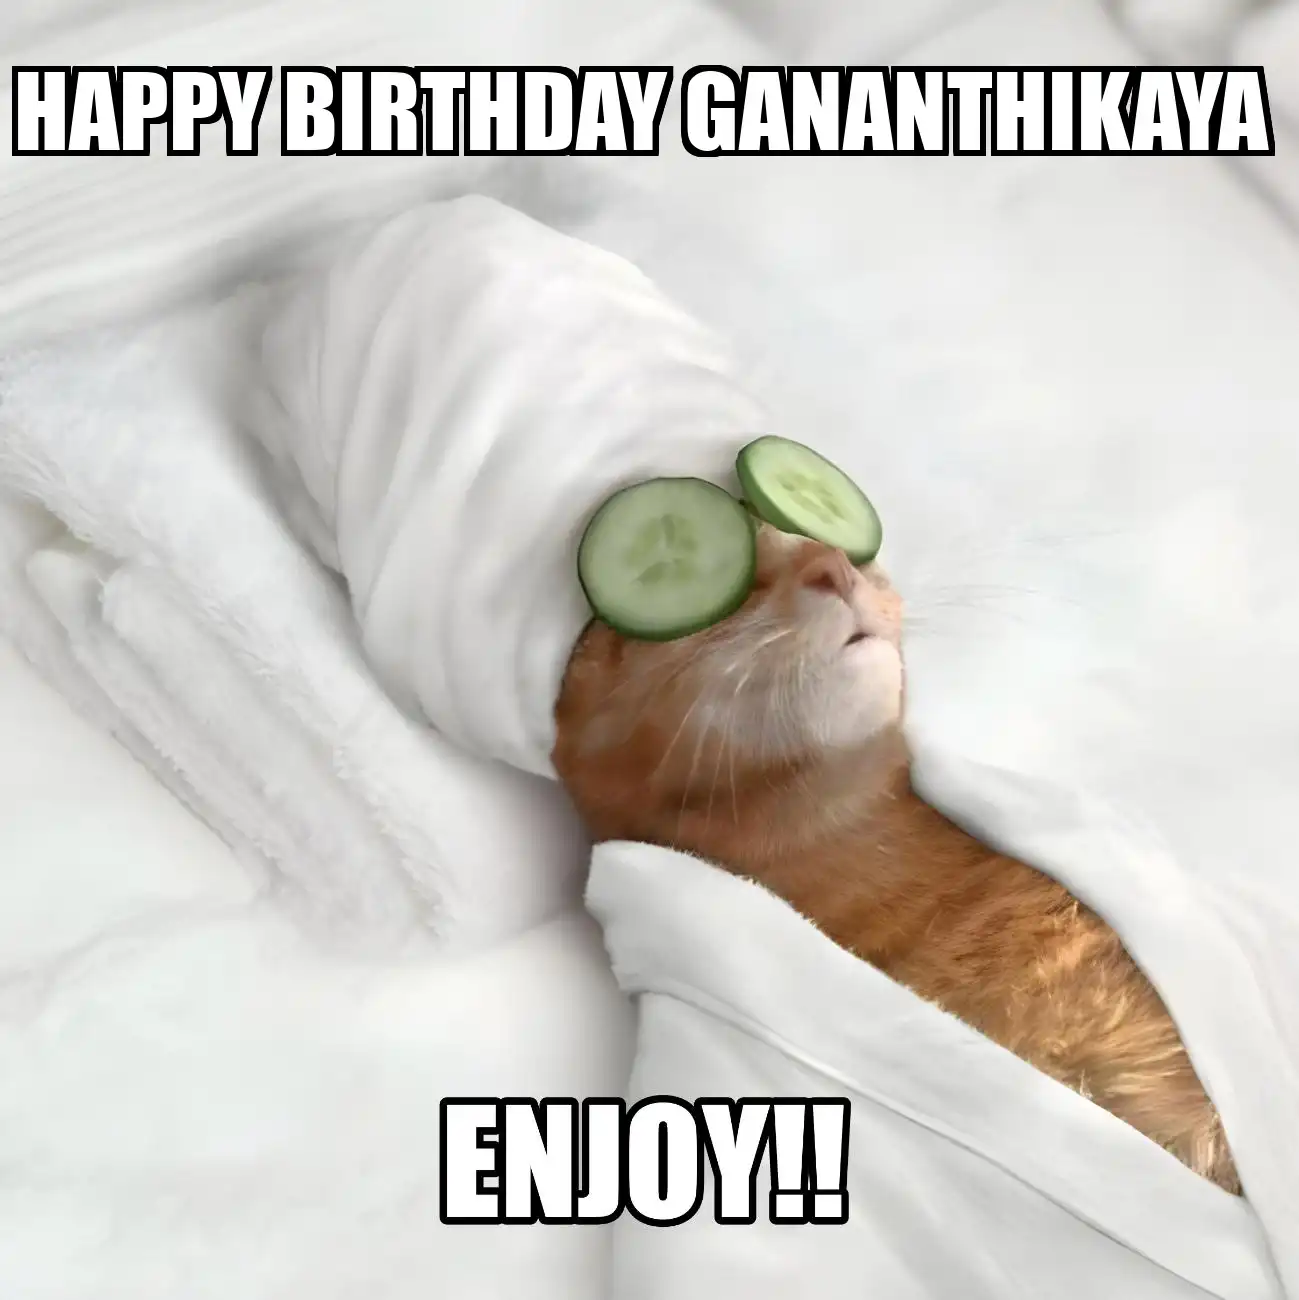 Happy Birthday Gananthikaya Enjoy Cat Meme